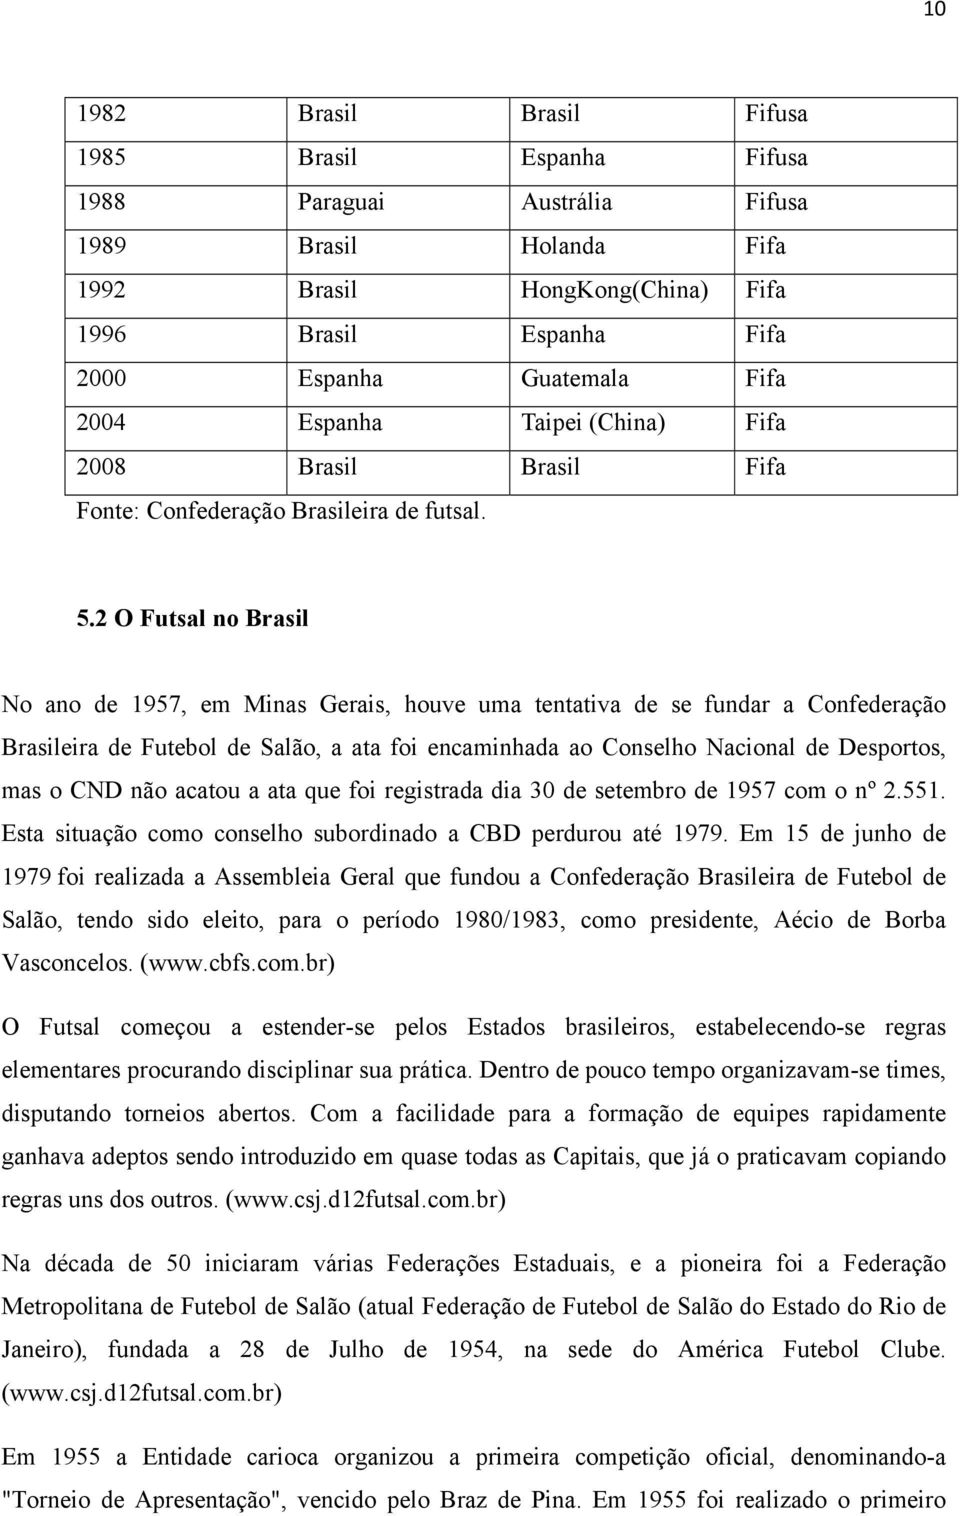 2 O Futsal no Brasil No ano de 1957, em Minas Gerais, houve uma tentativa de se fundar a Confederação Brasileira de Futebol de Salão, a ata foi encaminhada ao Conselho Nacional de Desportos, mas o